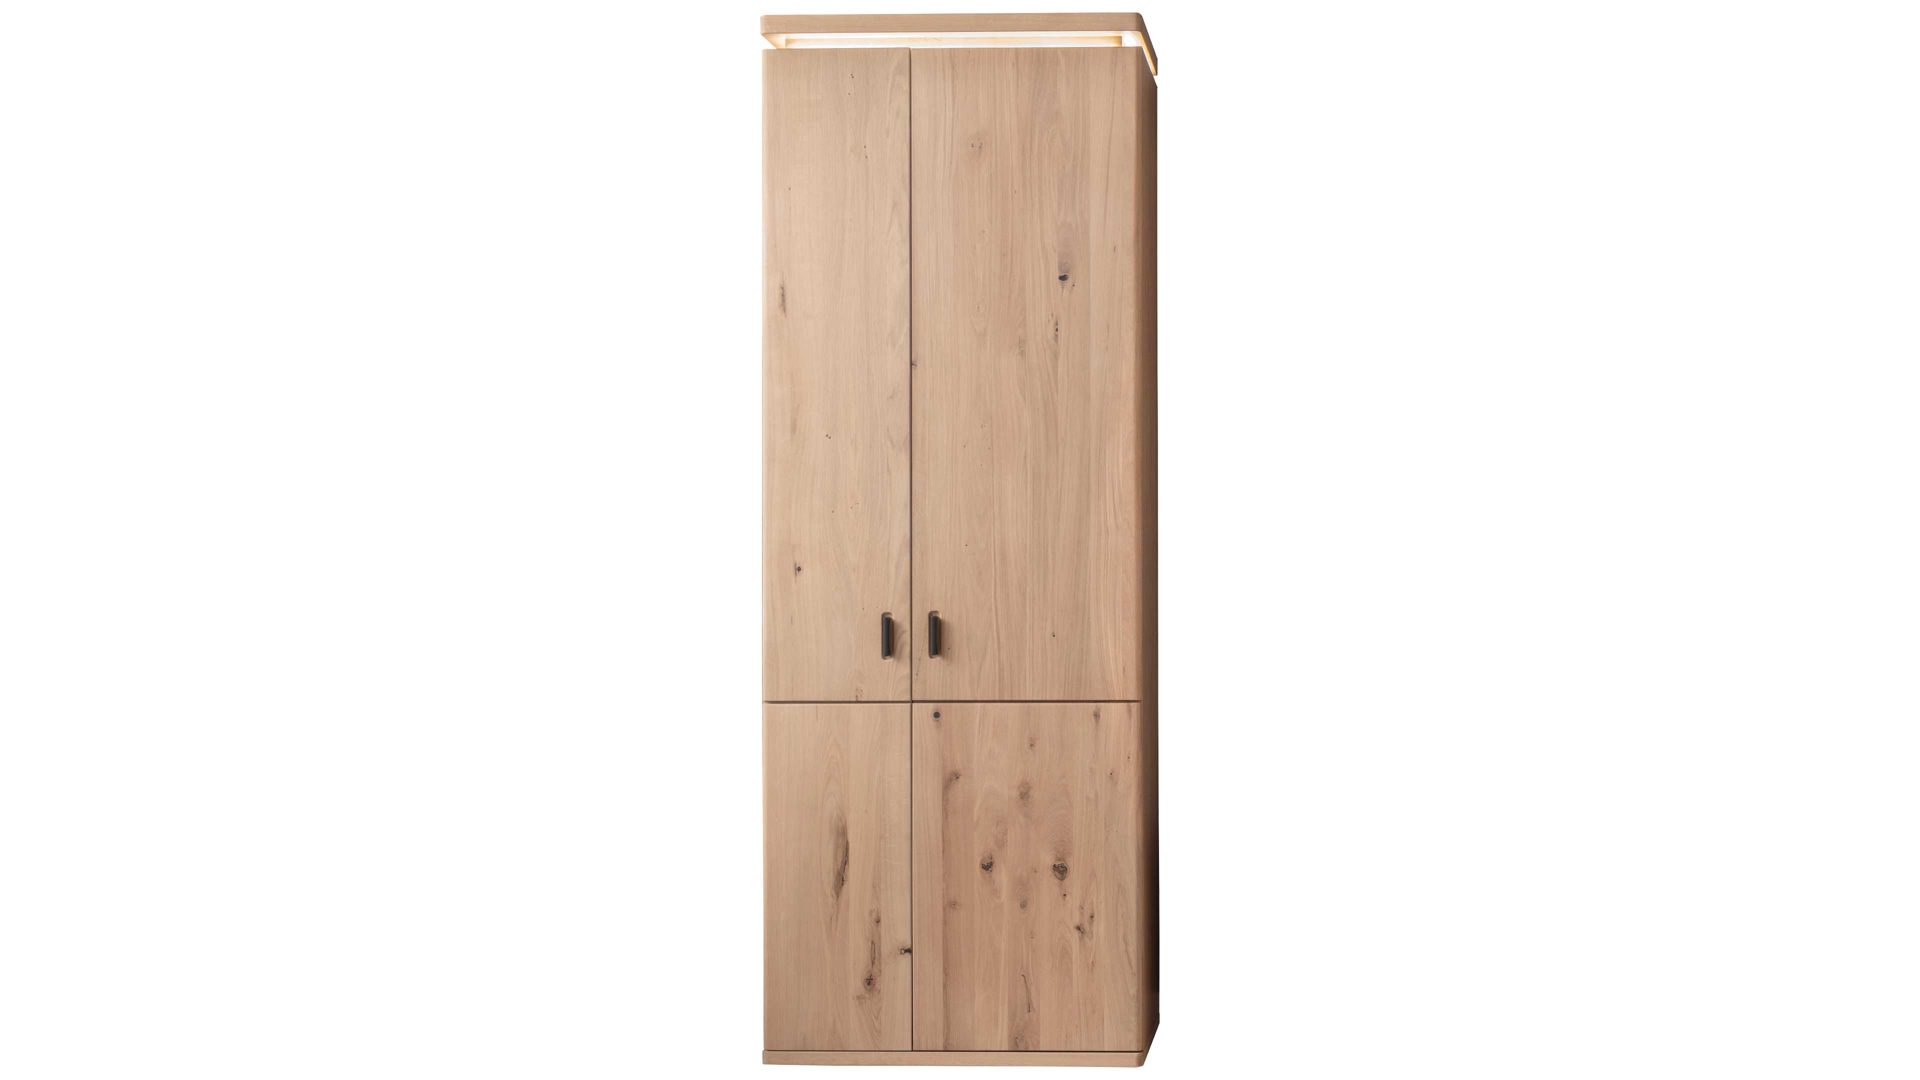 Garderobenschrank Mca furniture aus Holz in Holzfarben Garderobenprogramm Barcelona - Garderobenschrank geölte Wildeiche – zwei Türen, Breite ca. 75 cm